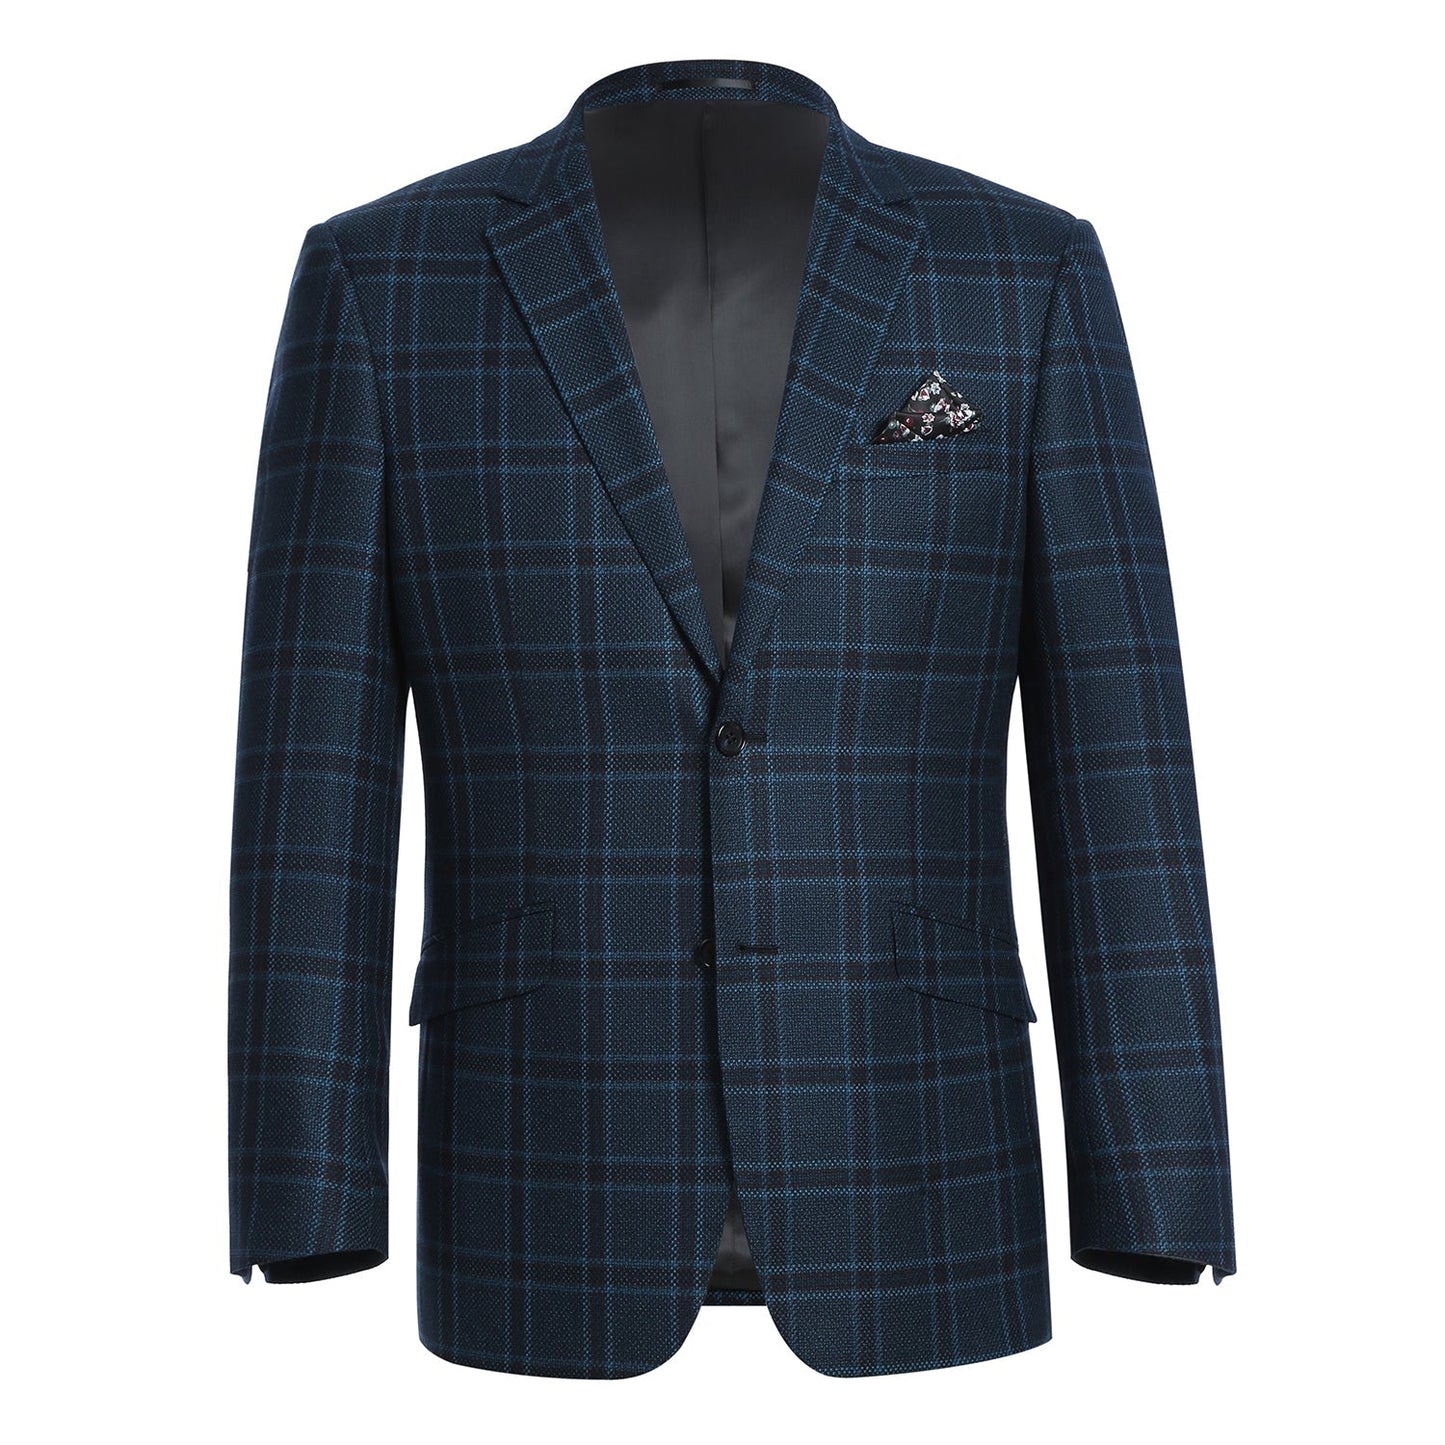 561-8 Men's Teal Blue Slim Fit 100% Wool Sport Coat